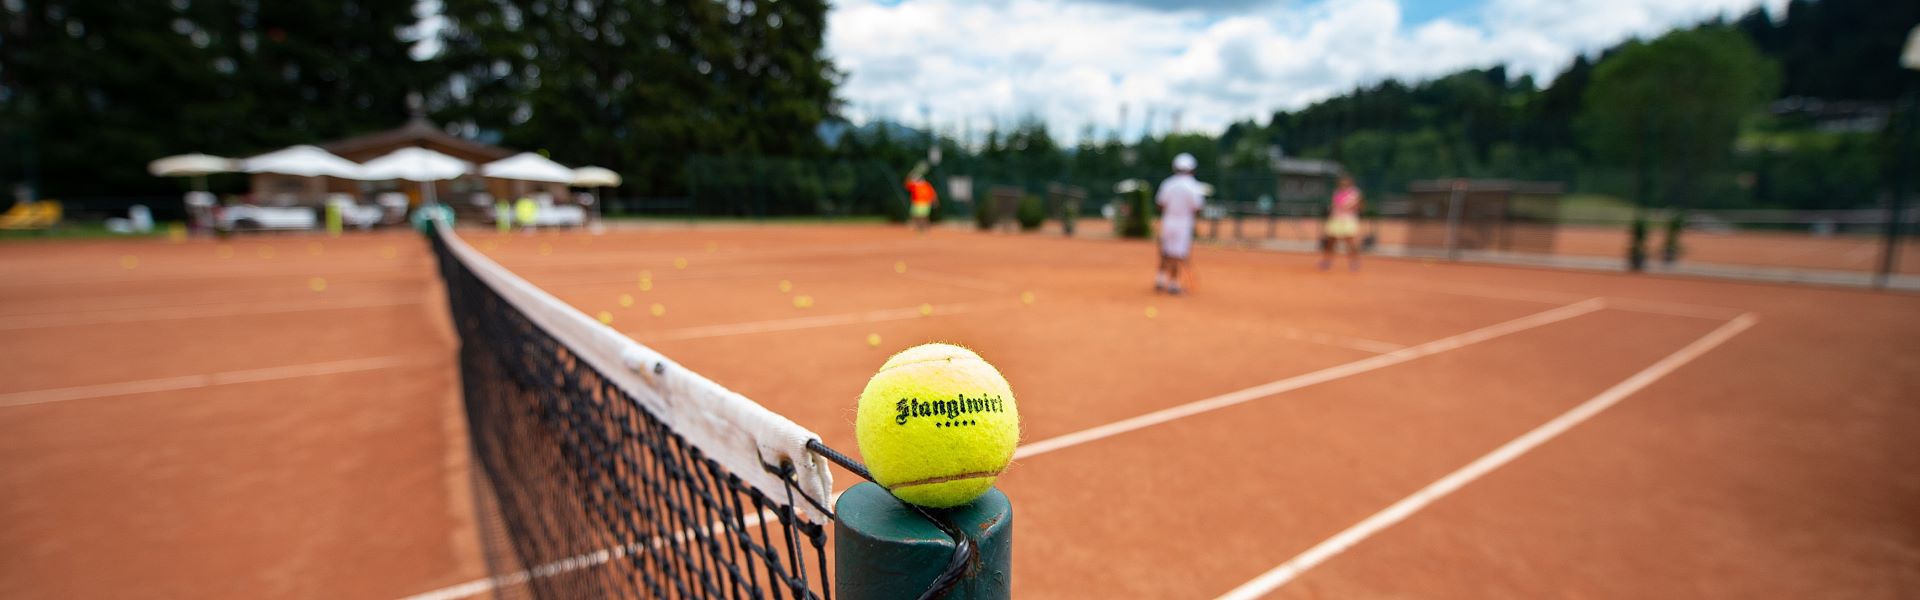 <strong>Technik & Taktik</strong><br><br>Verbessern Sie Ihr Spiel mit den Trainerinnen und Trainern der rennommierten Tennisschule „Peter Burwash International“, die seit 40 Jahren exklusiv in Österreich bei uns im Stanglwirt Partner ist!